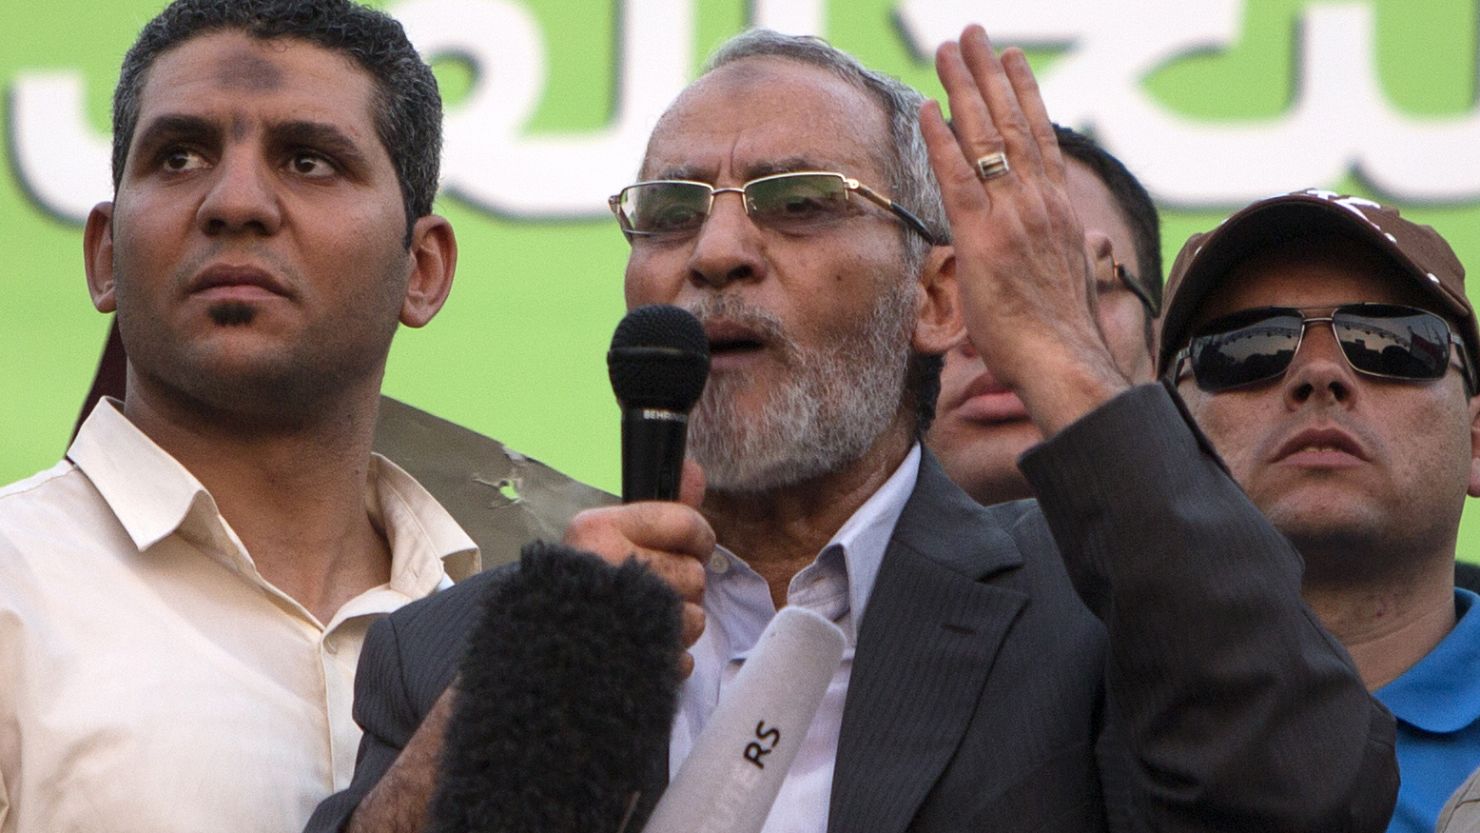 In June, a court upheld the death sentence imposed on Muslim Brotherhood leader Mohammed Badie.